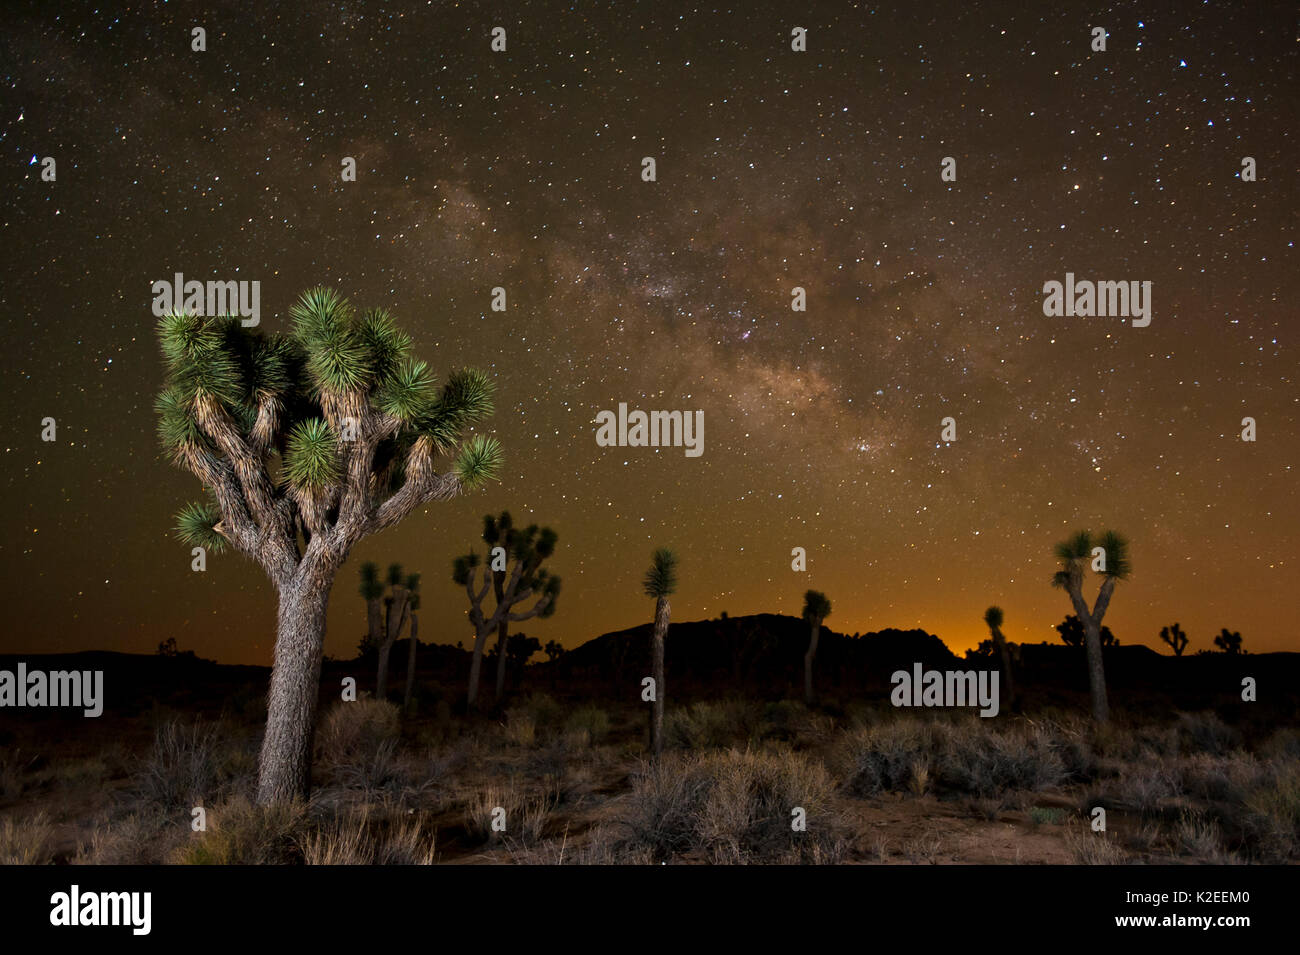 Joshua tree (Yucca brevifolia) at night with Milky Way, Joshua Tree National Park, California, USA. Stock Photo